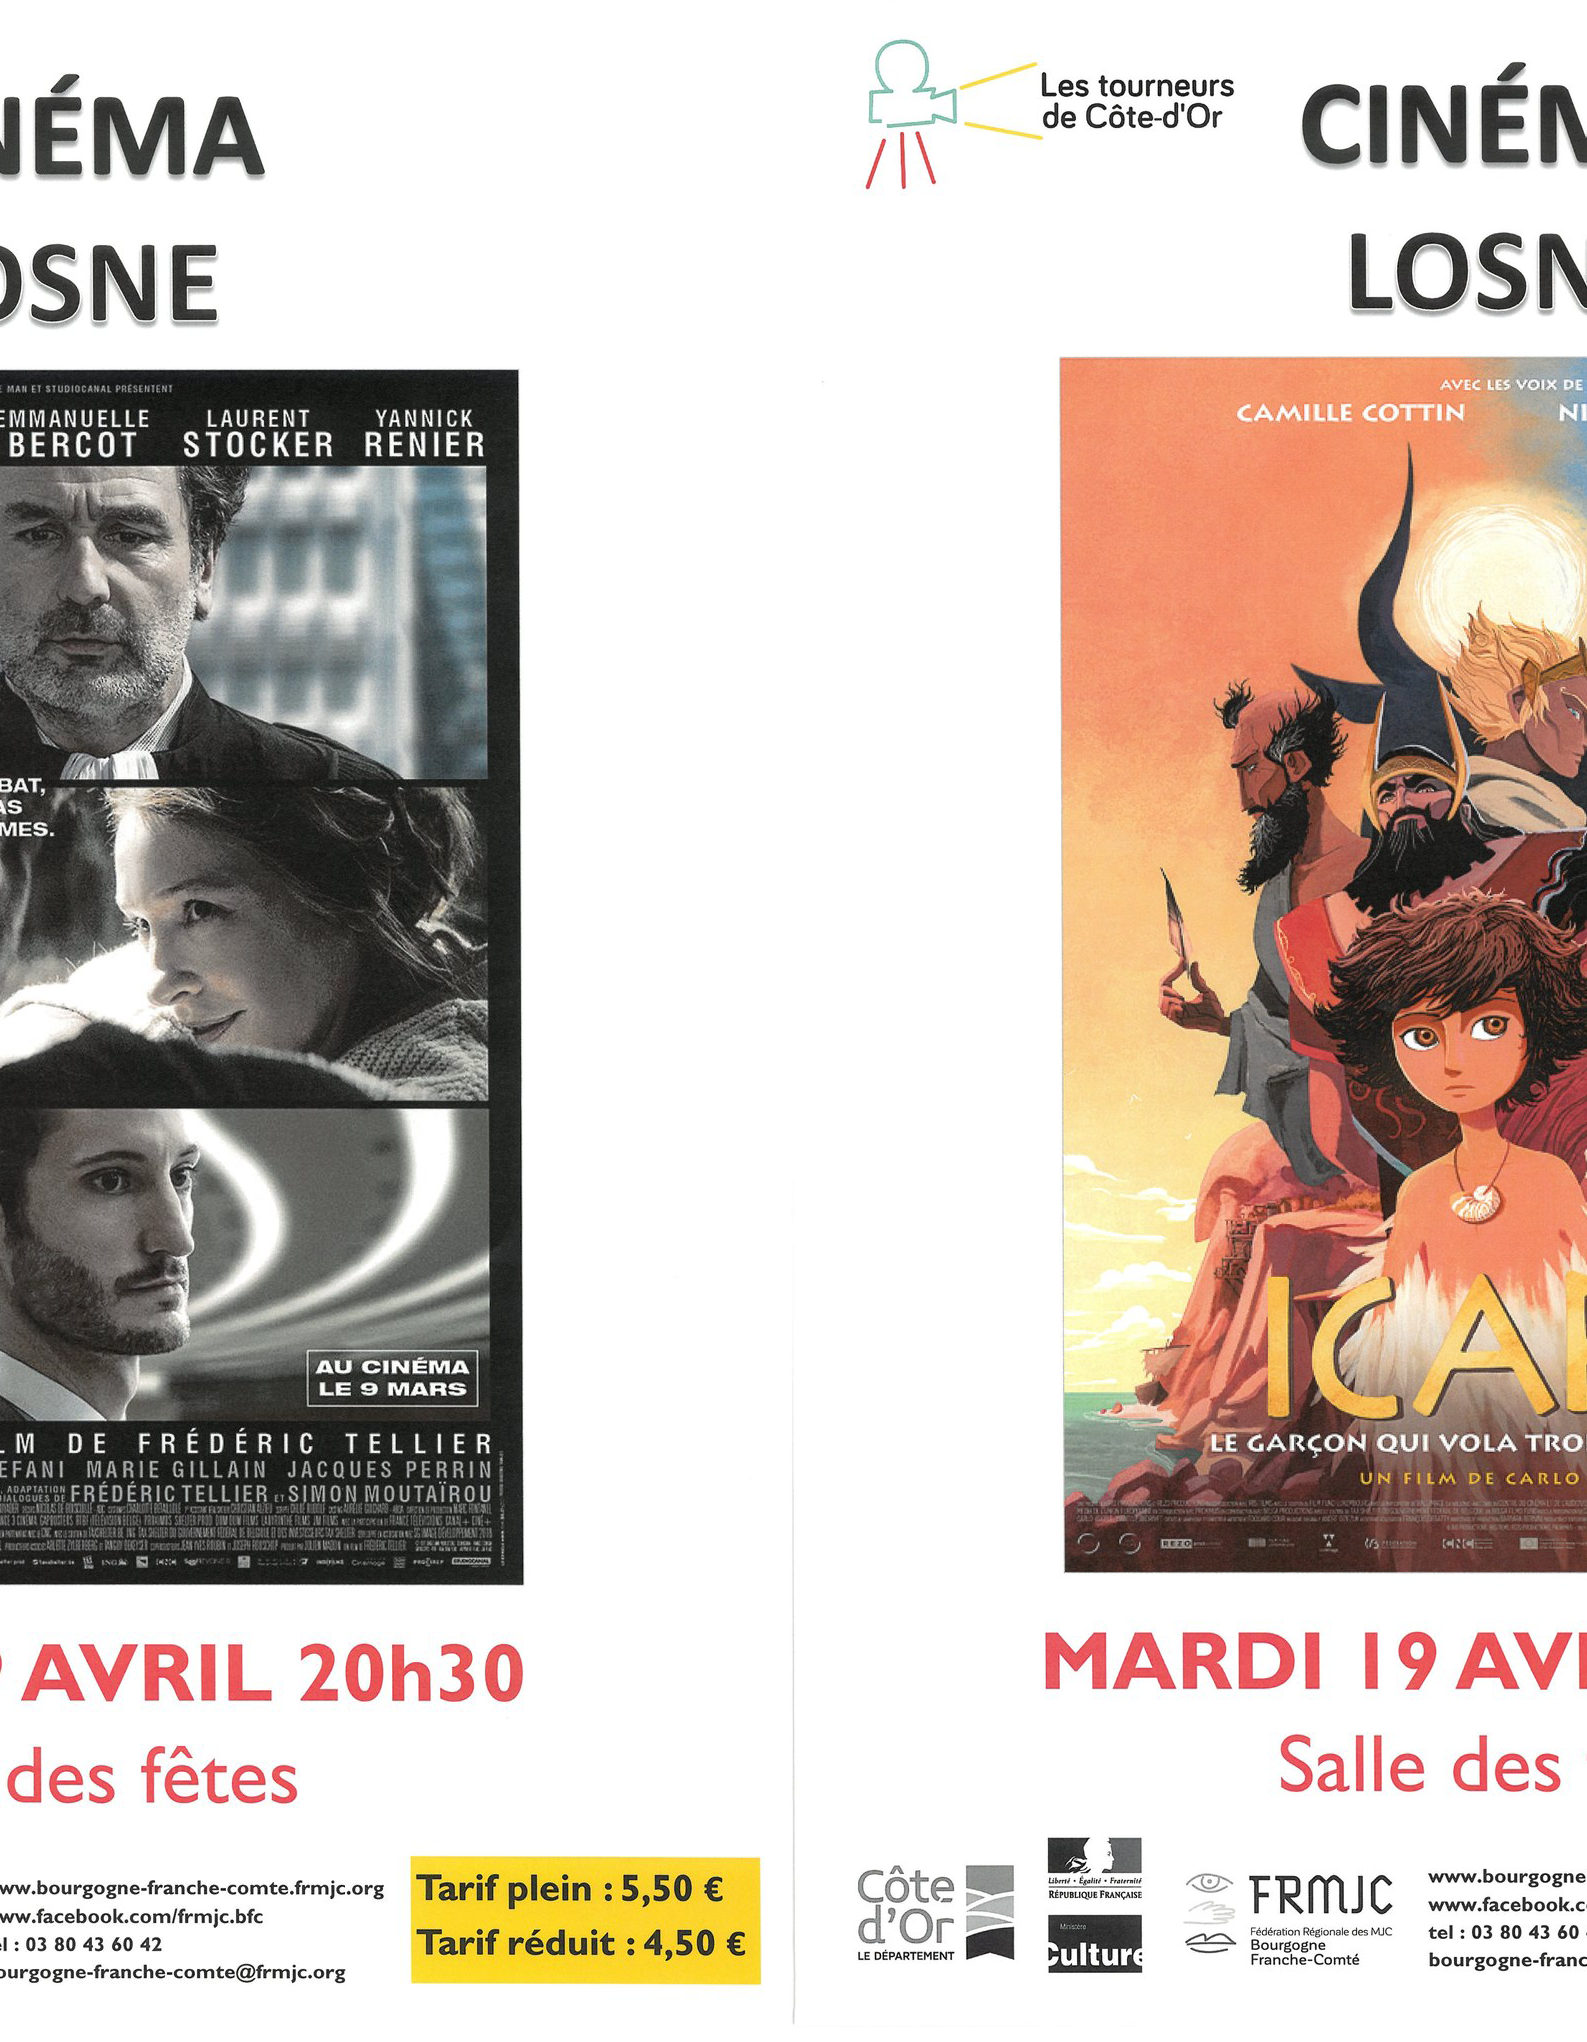 Cinéma_Losne